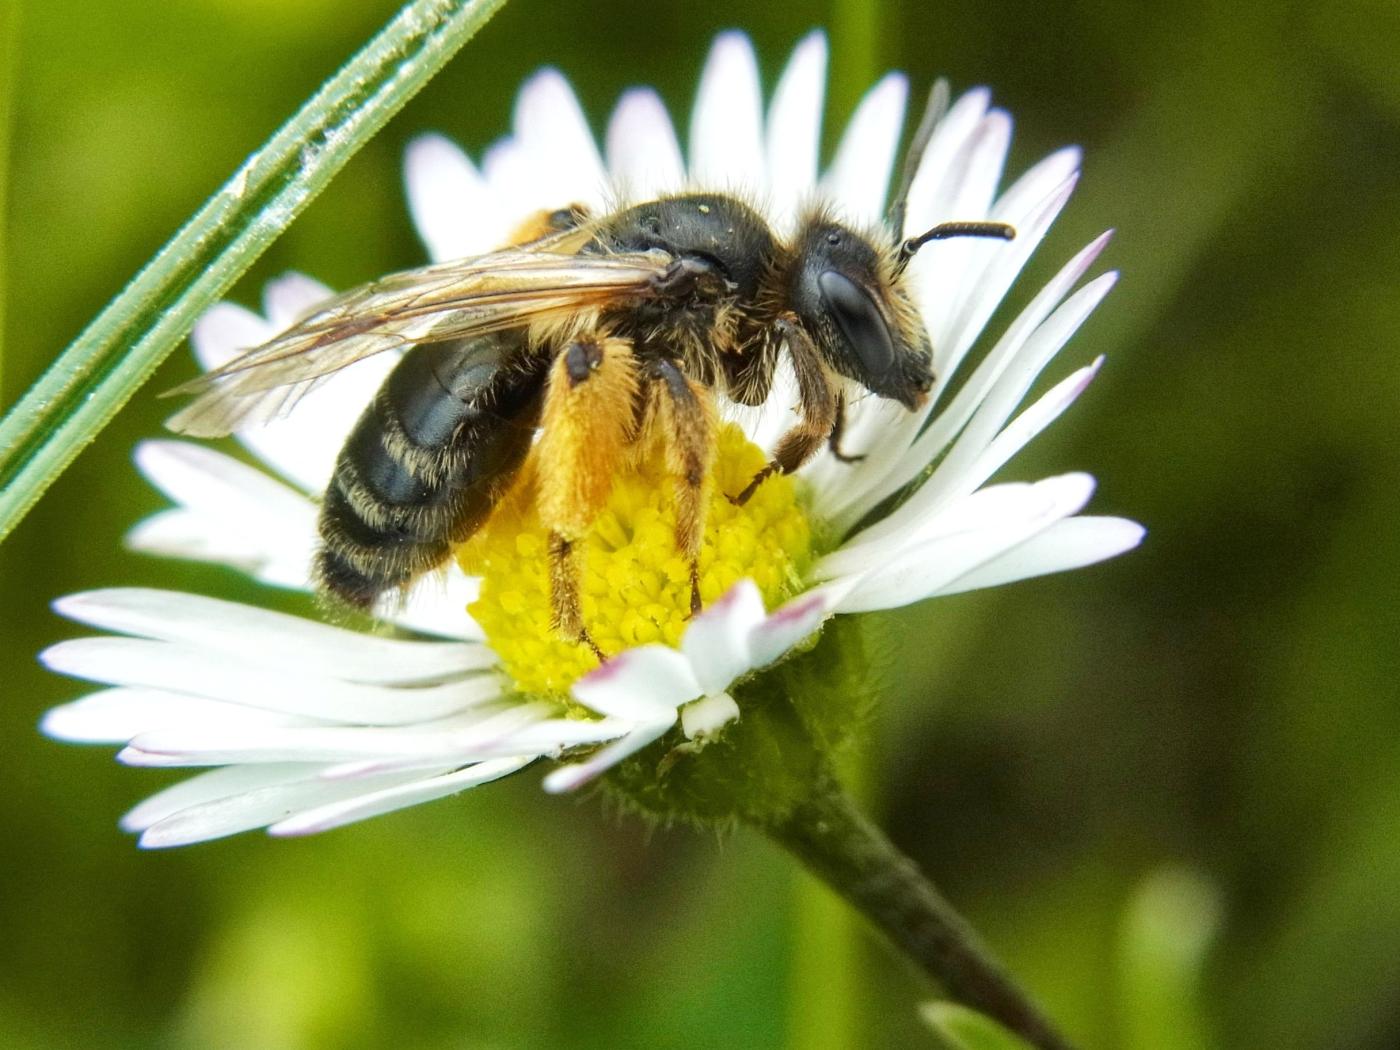 "Bijen zijn belangrijke bestuivers van planten die wij eten."